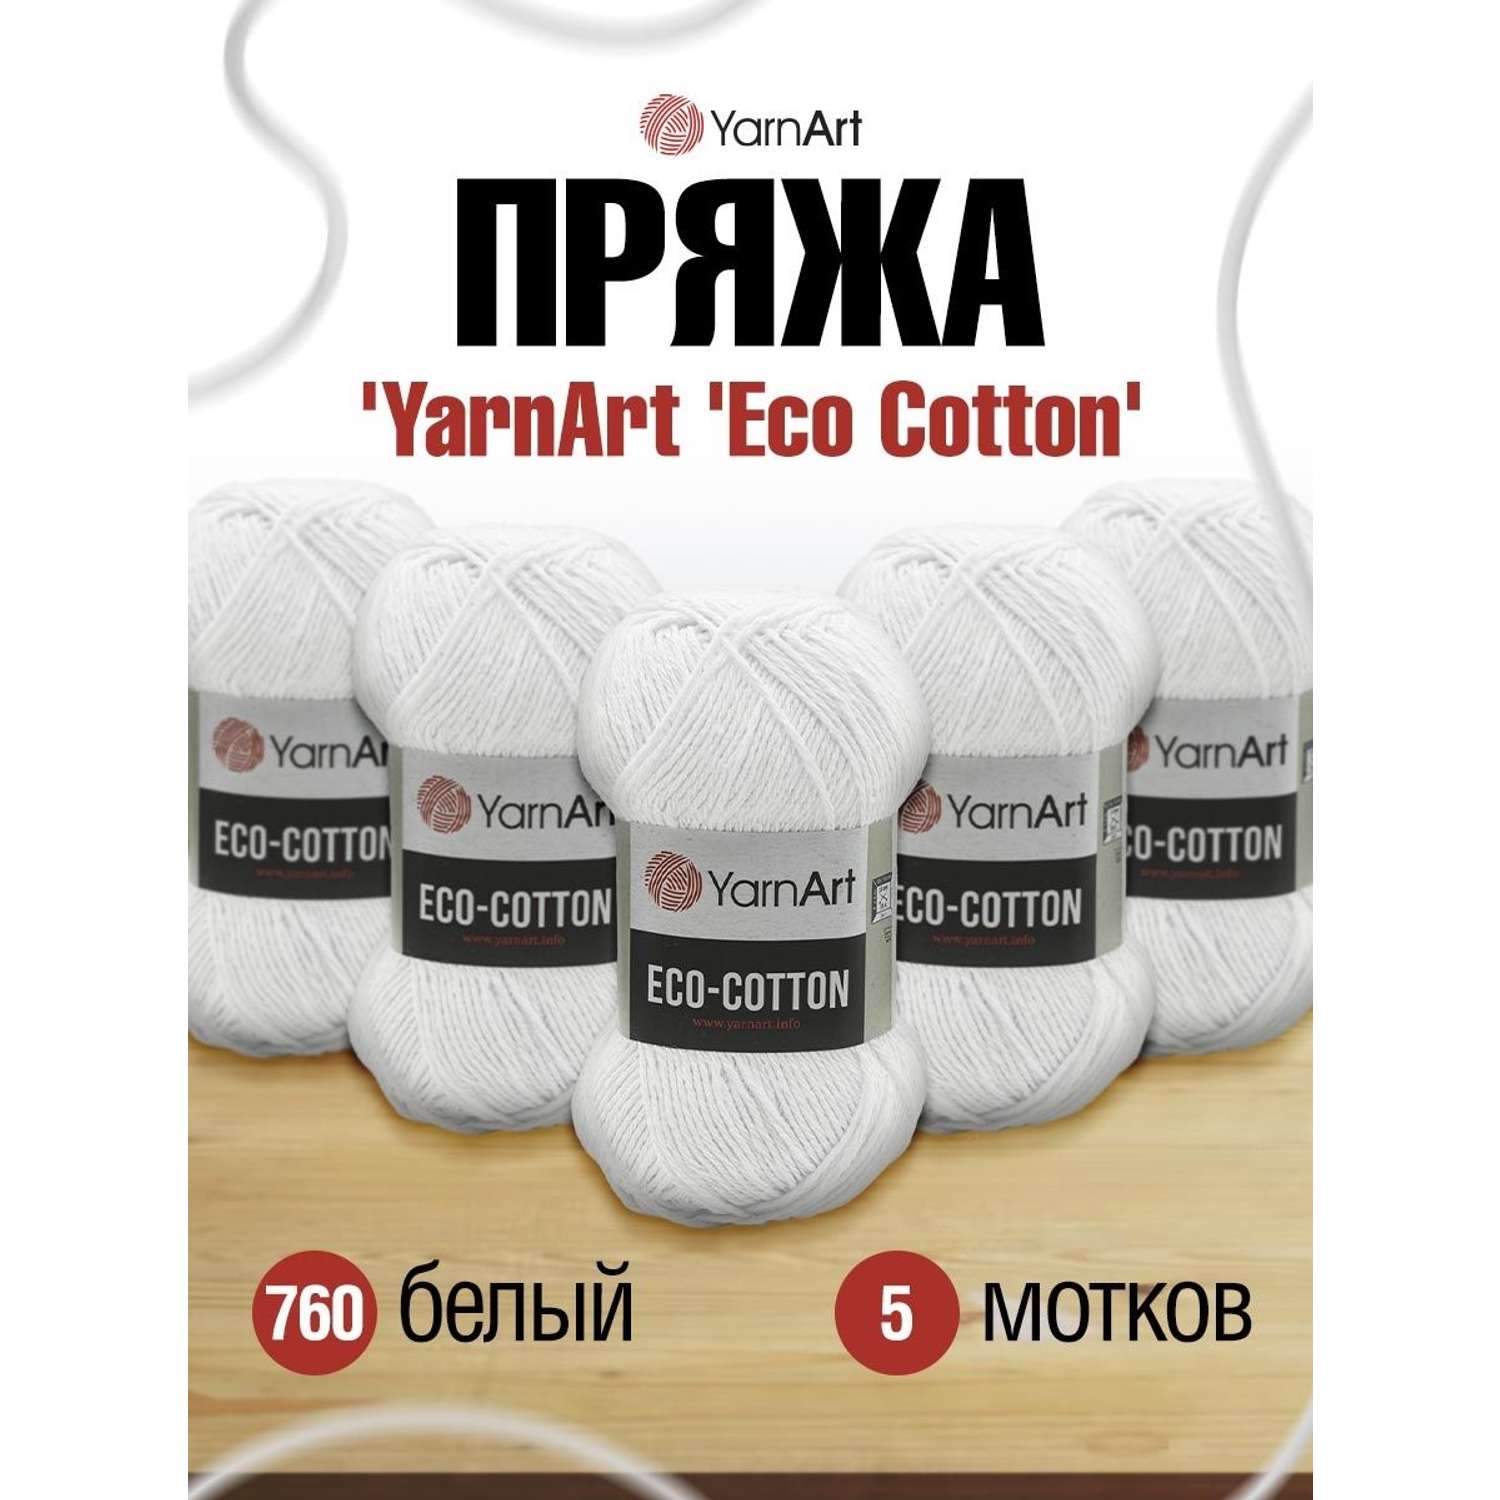 Пряжа YarnArt Eco Cotton комфортная для летних вещей 100 г 220 м 760 белый 5 мотков - фото 1